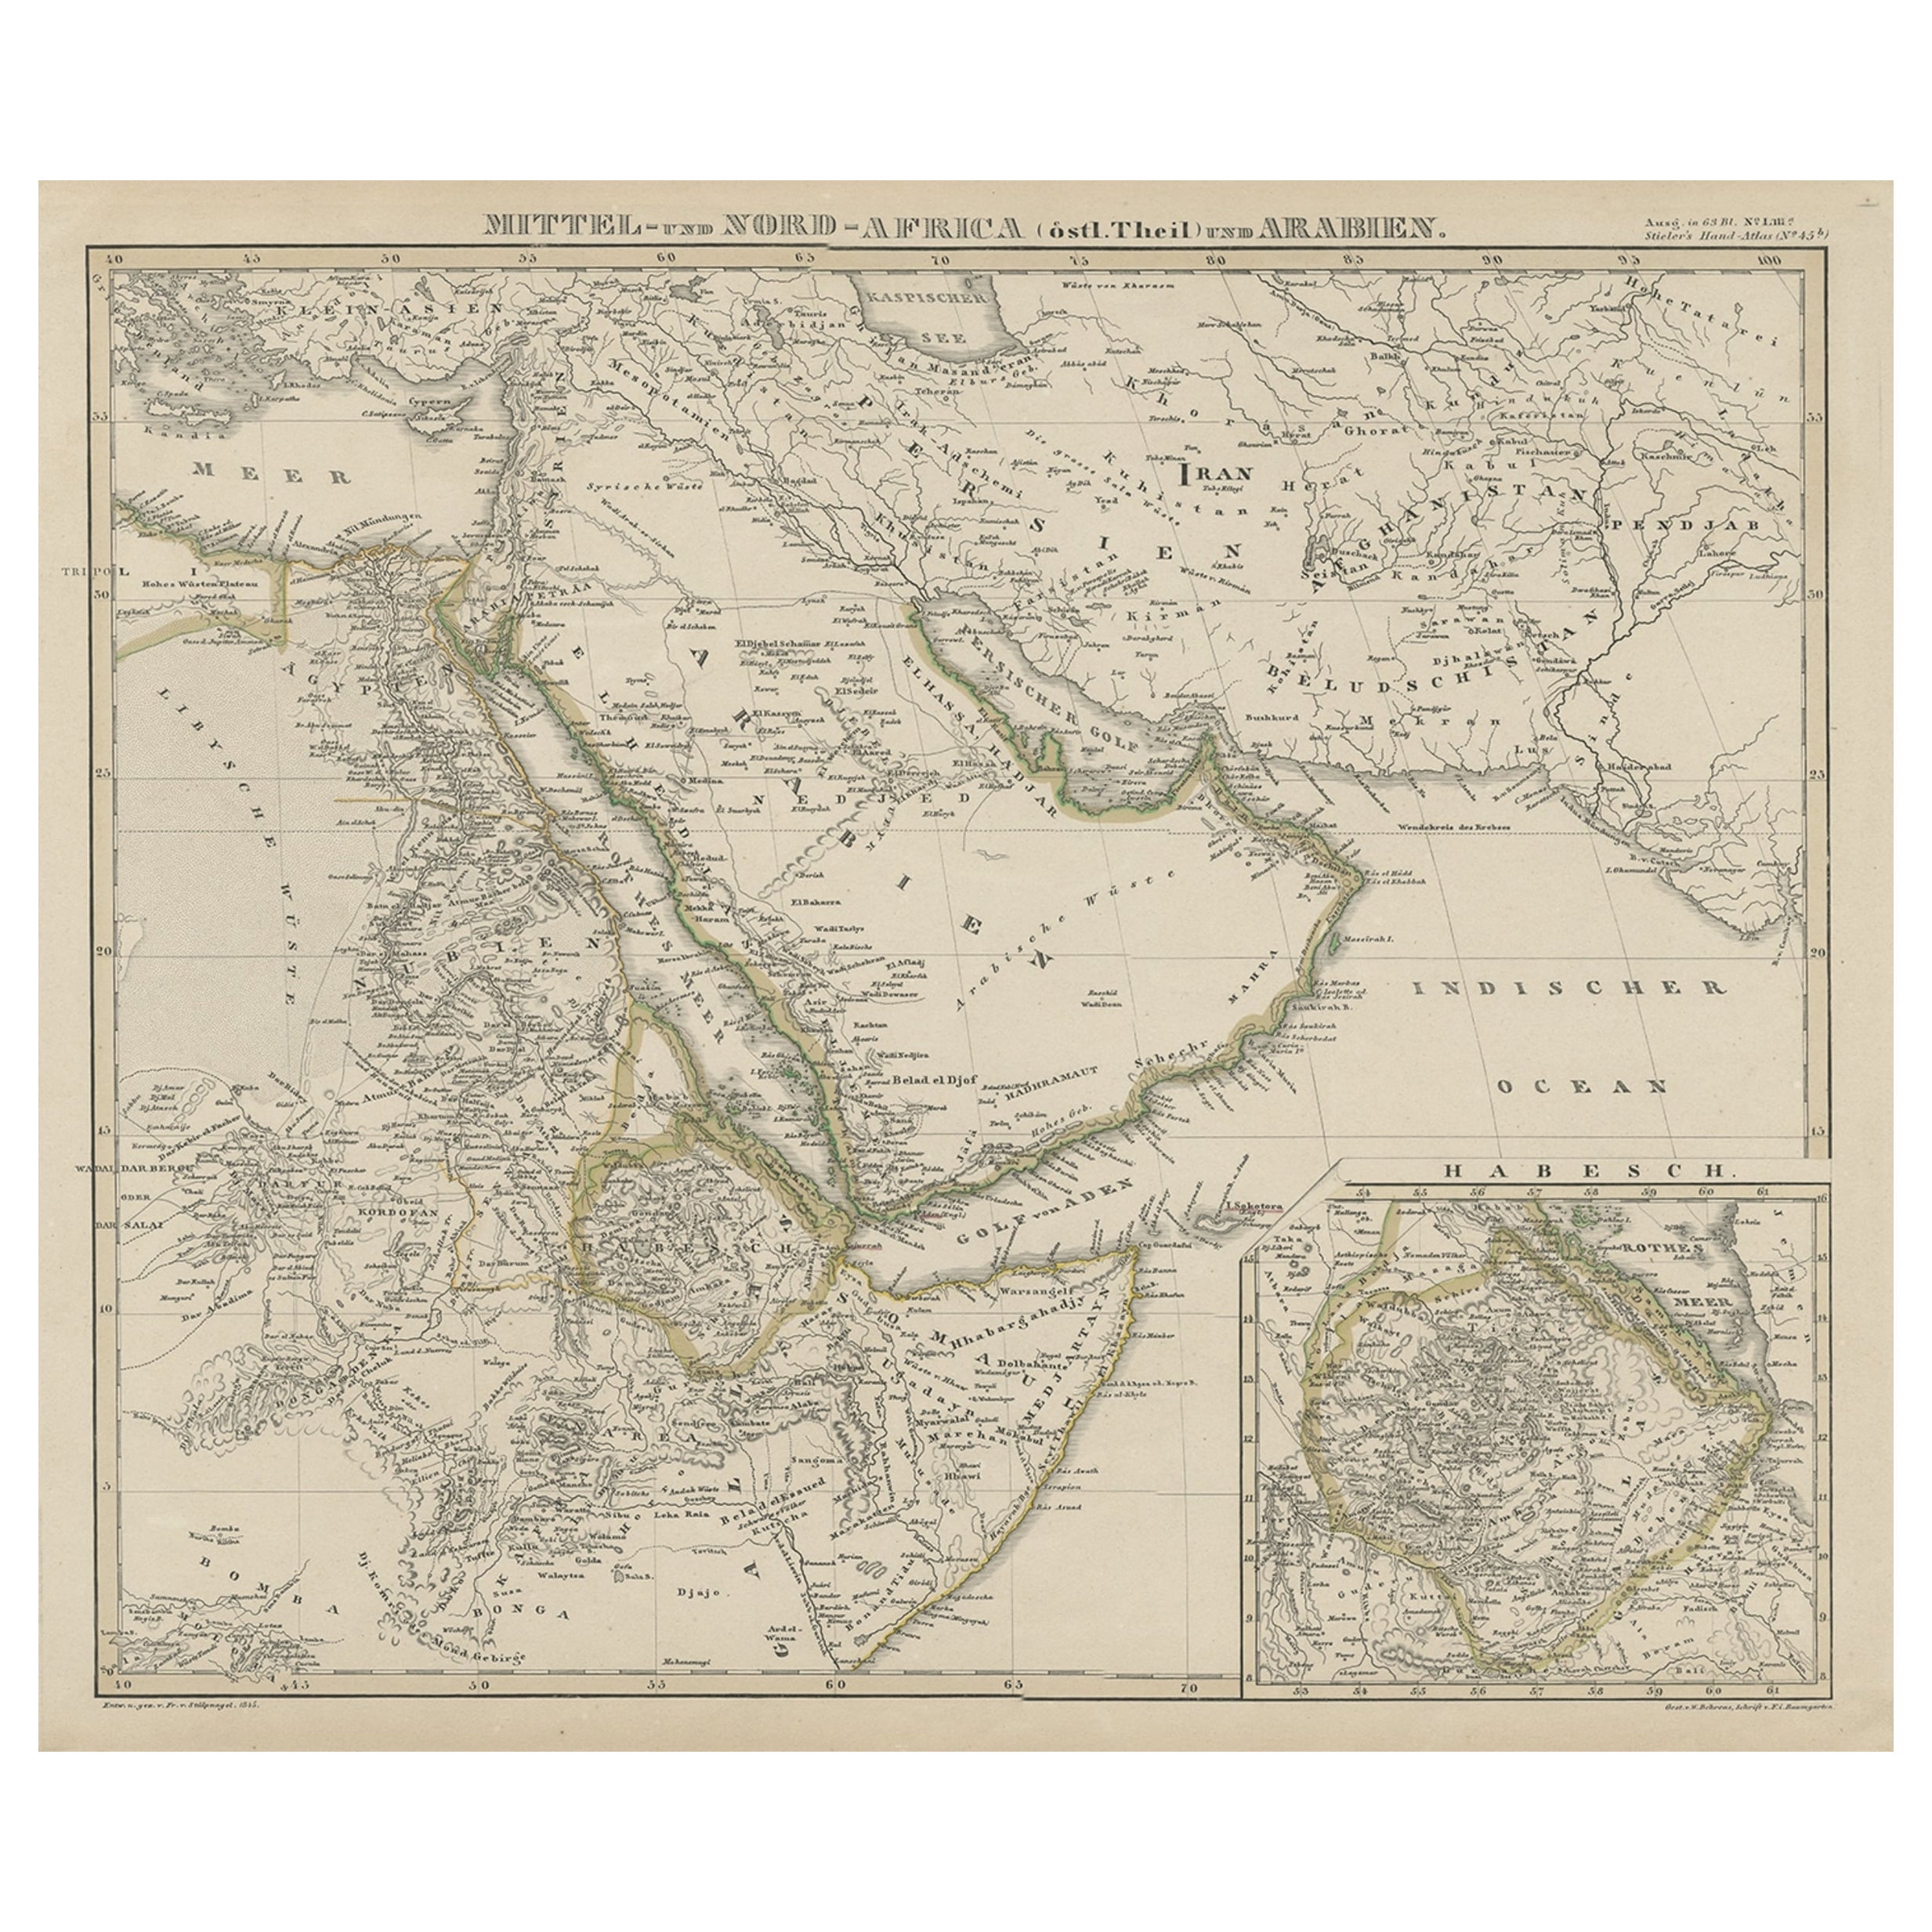 Nord- und Mittelafrika und Arabia, eingelassene Karte von Habesch „Ethiopia und Eritrea“, 1845